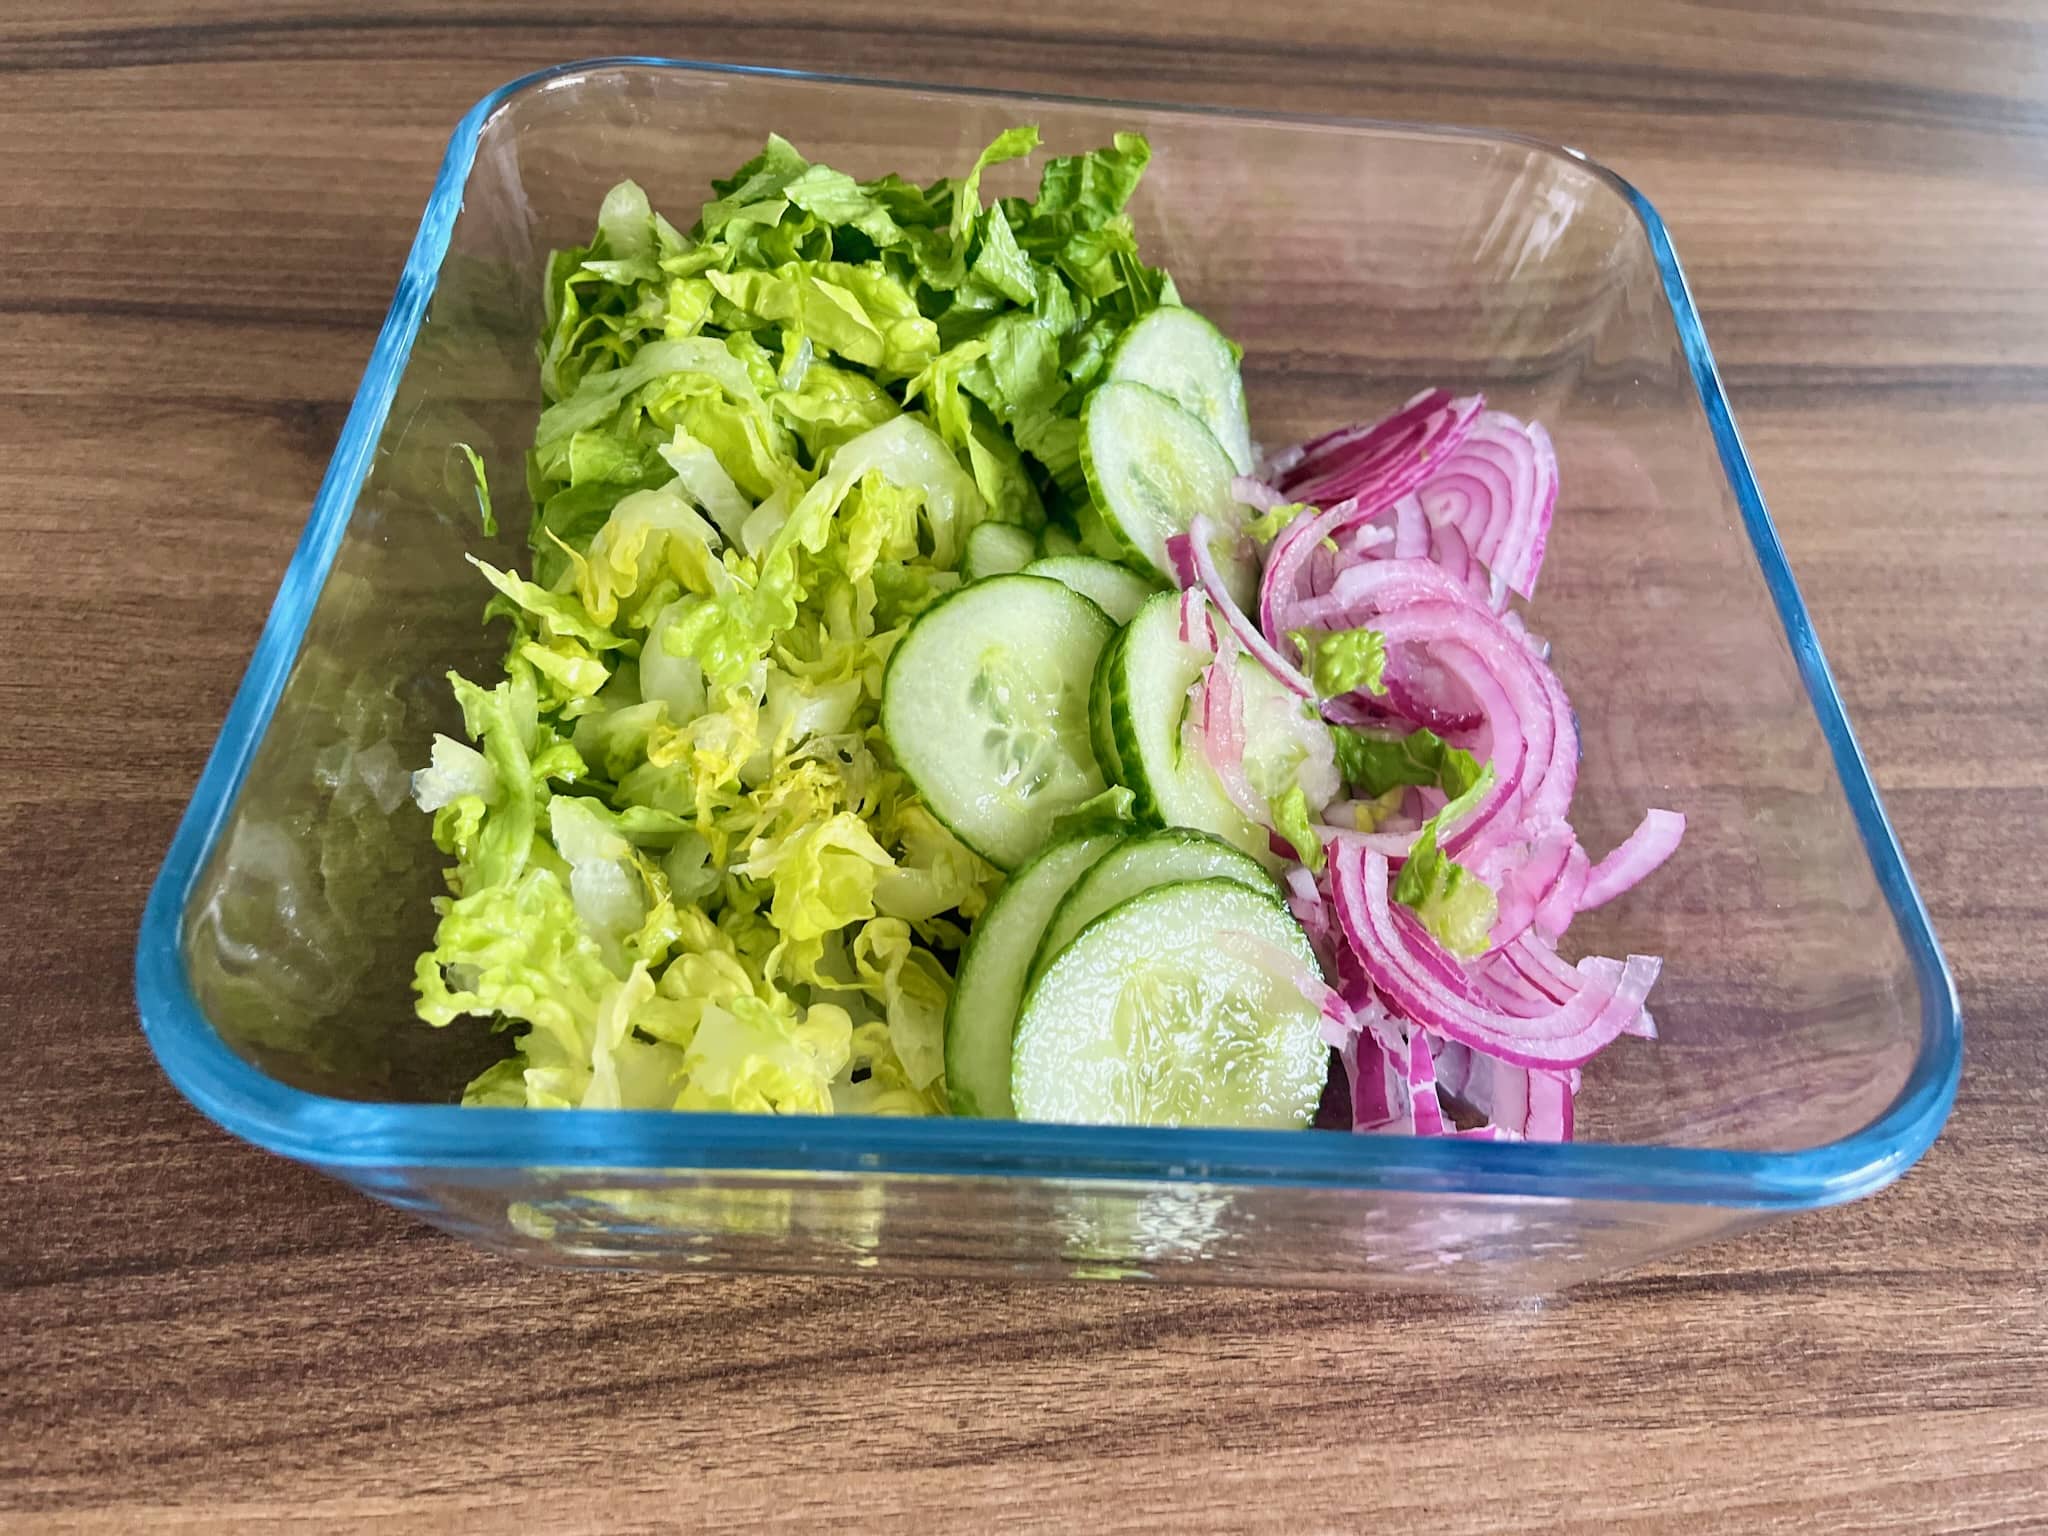 Sliced vegetables in a bowl